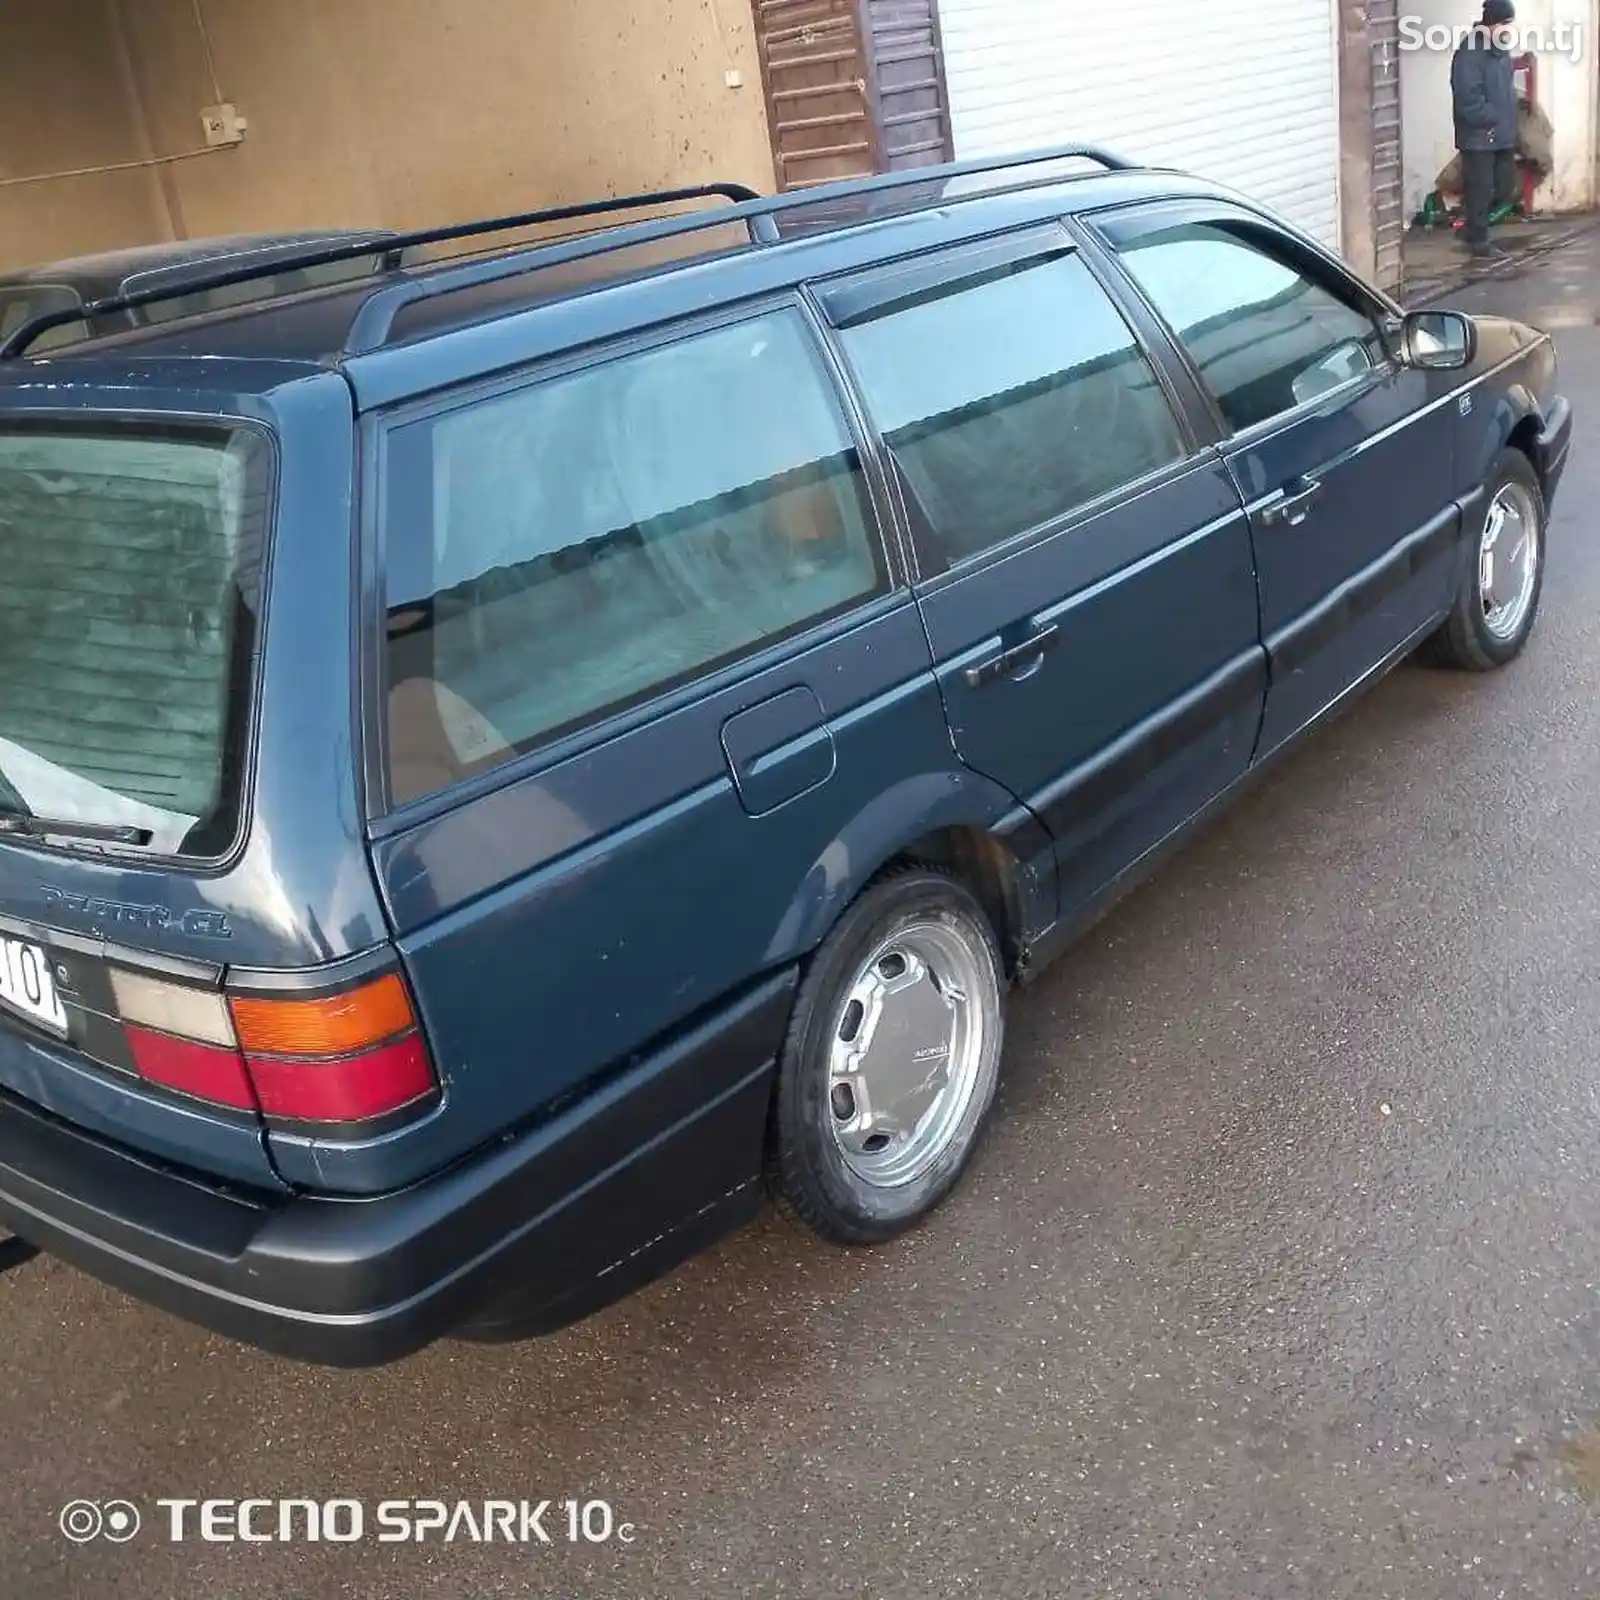 Volkswagen Passat, 1990-1